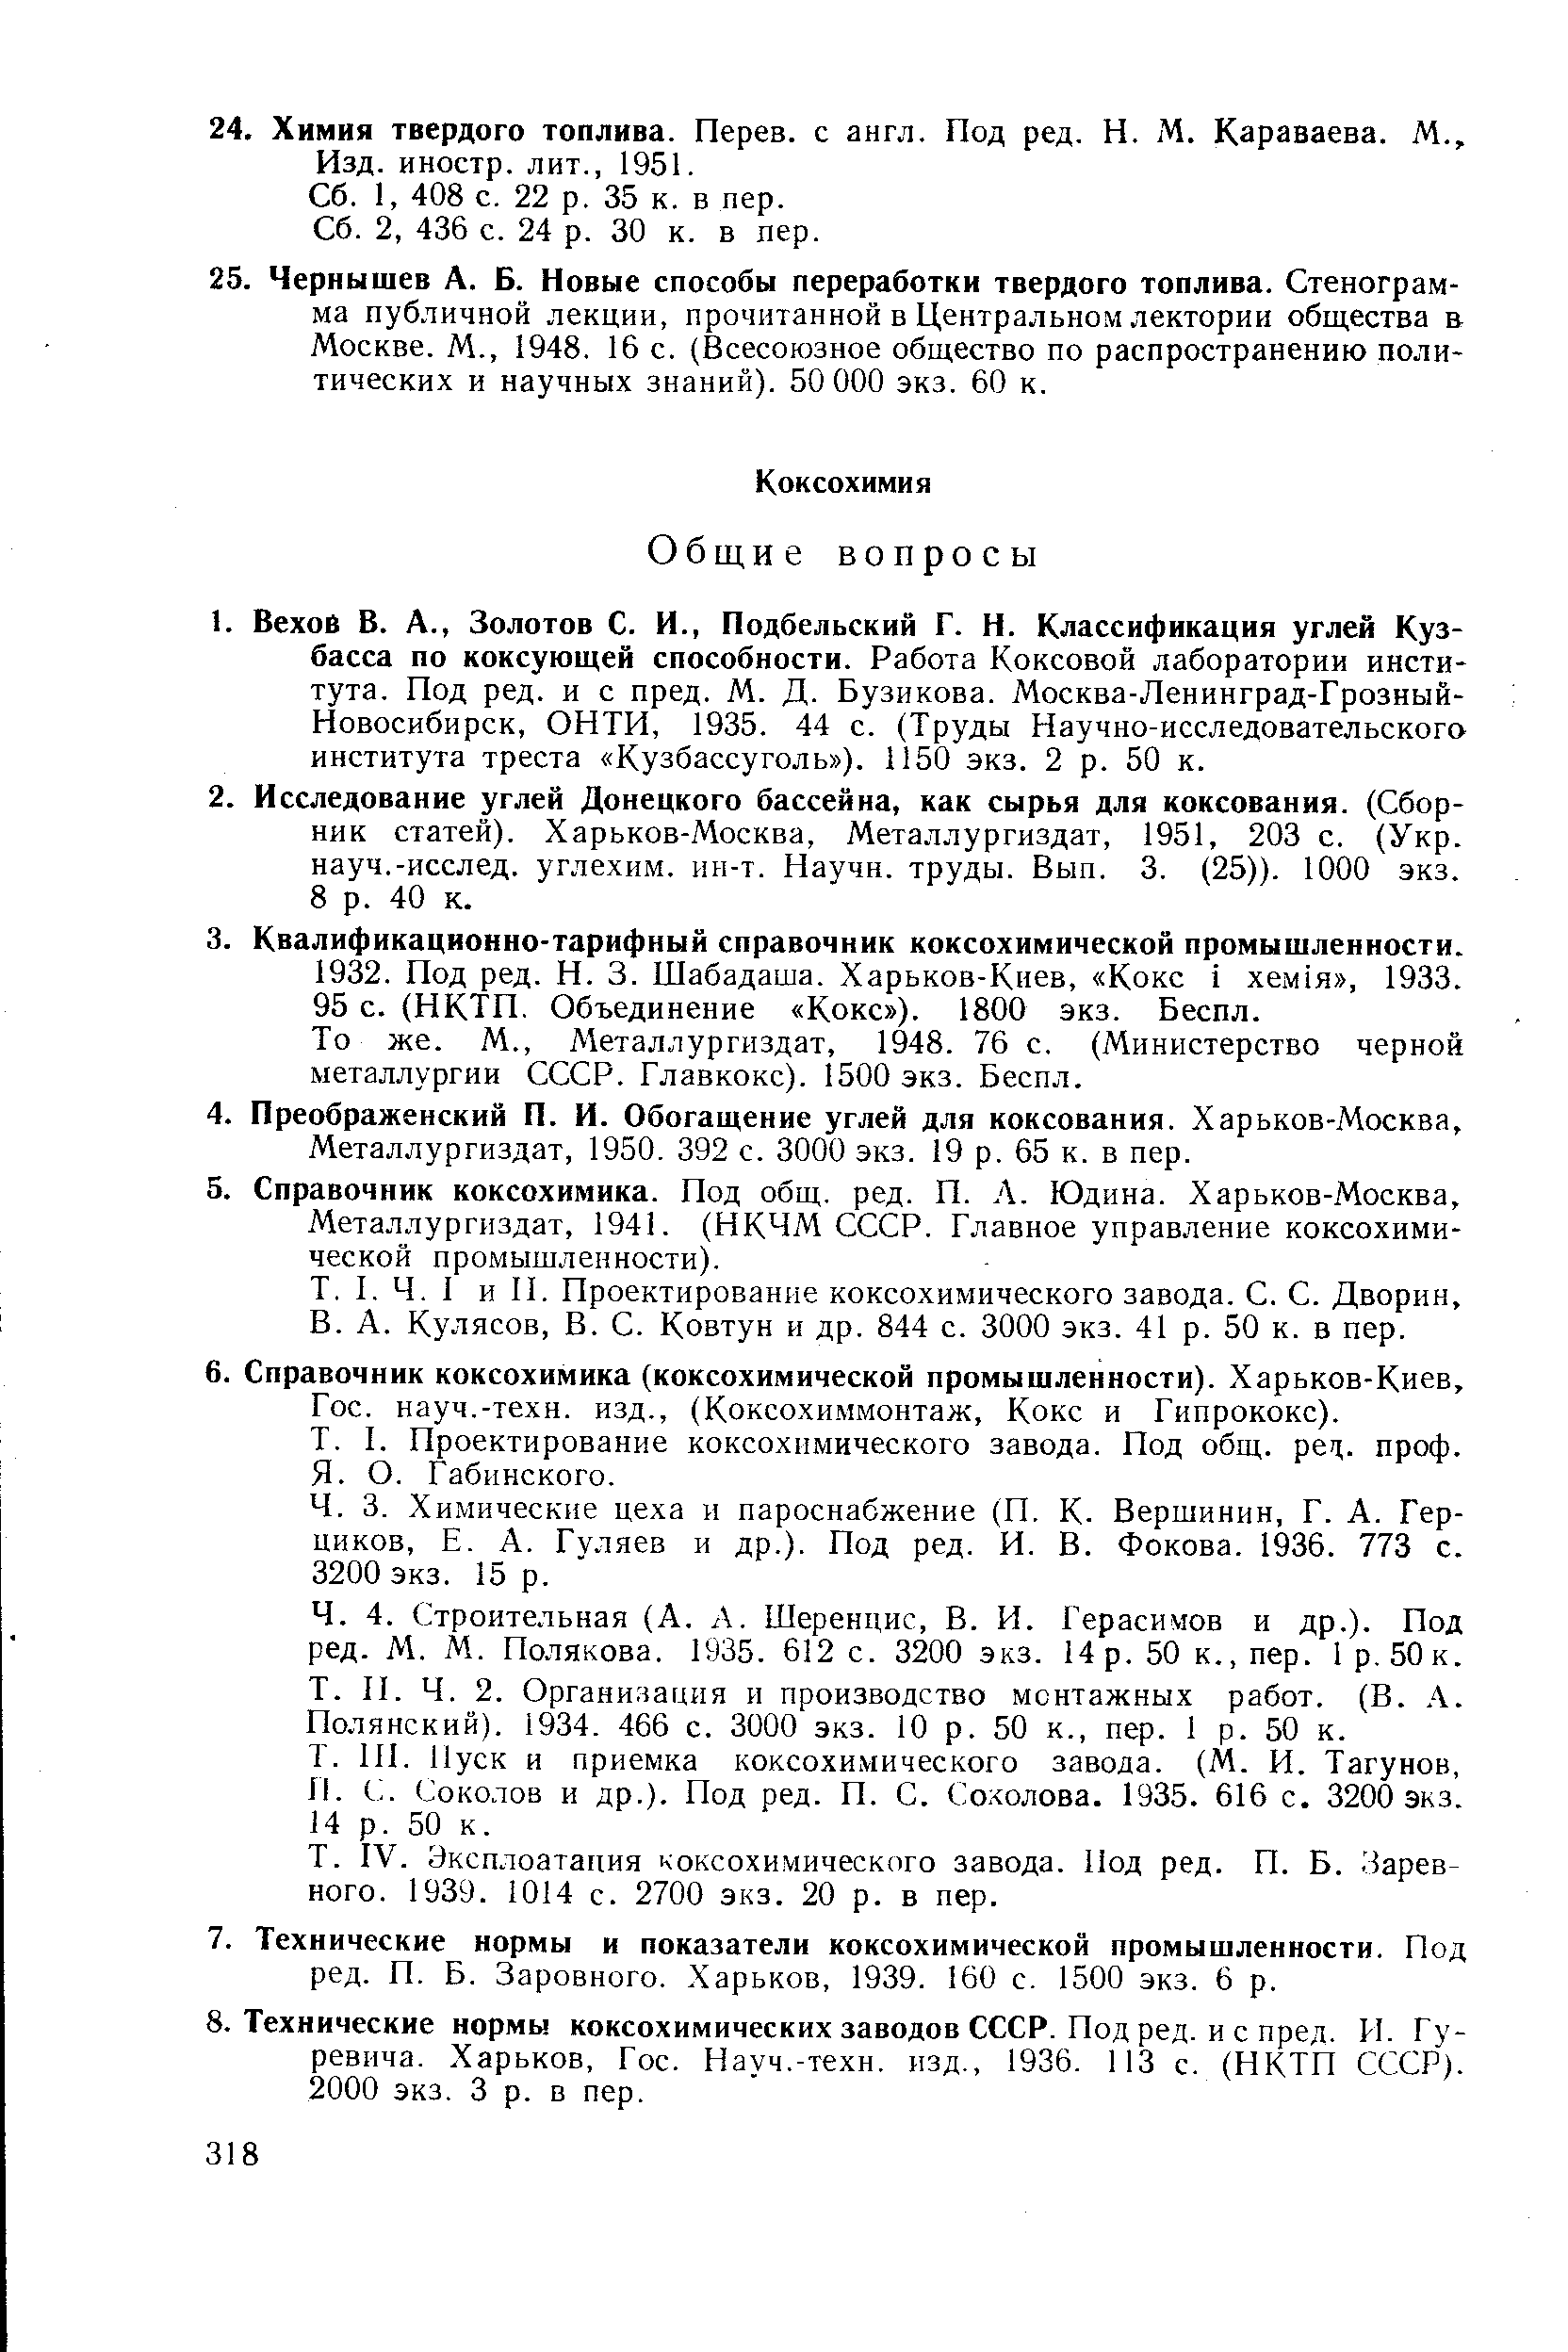 Металлургиздат, 1950. 392 с. 3000 экз. 19 р. 65 к. в пер.